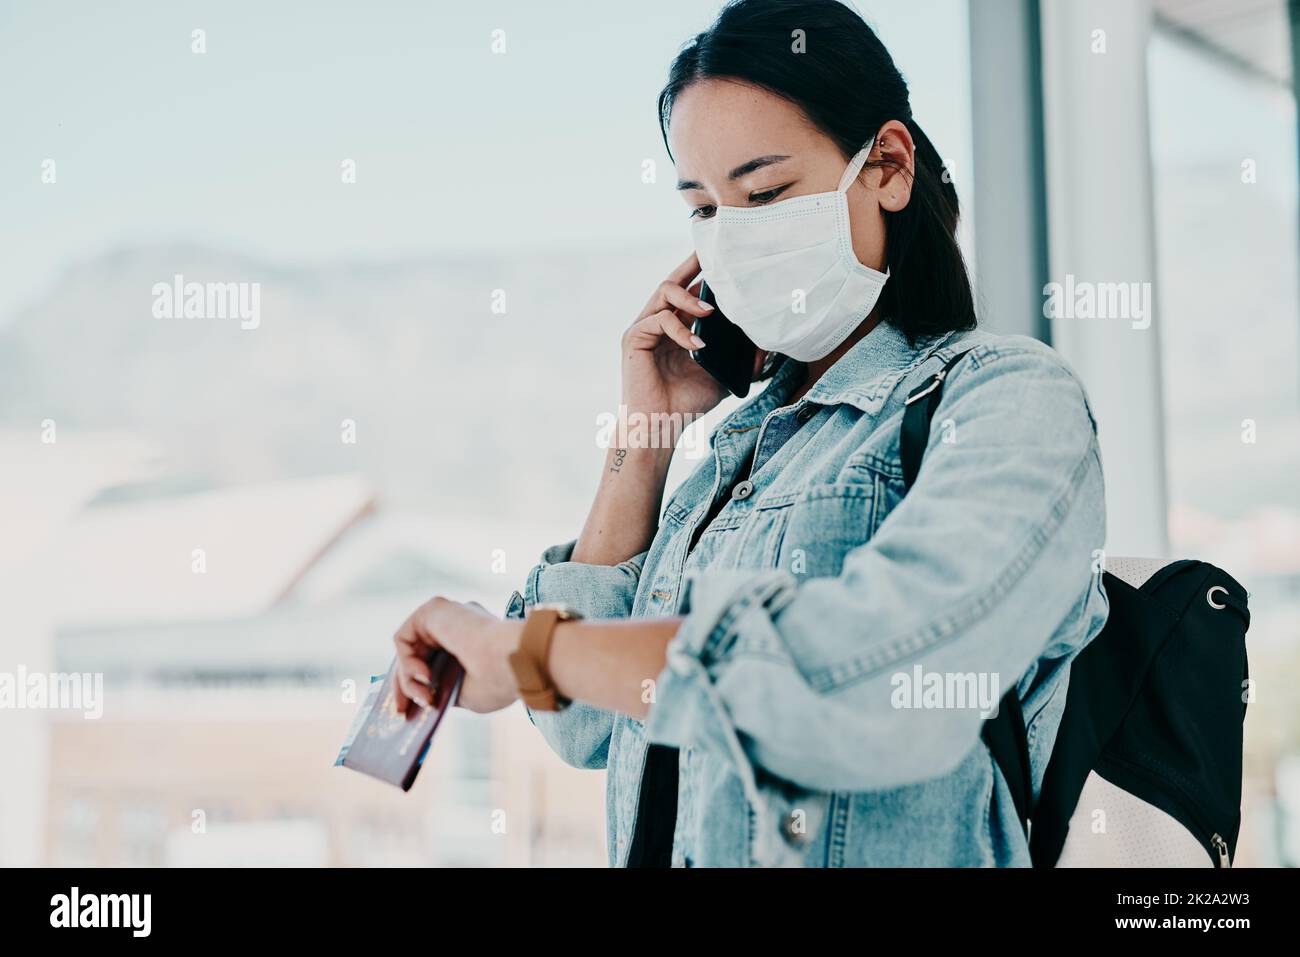 Stiamo esaurendo il tempo per vivere la nostra vita. Scatto di una giovane donna che indossa una maschera, usando uno smartphone e controllando l'ora in un aeroporto. Foto Stock